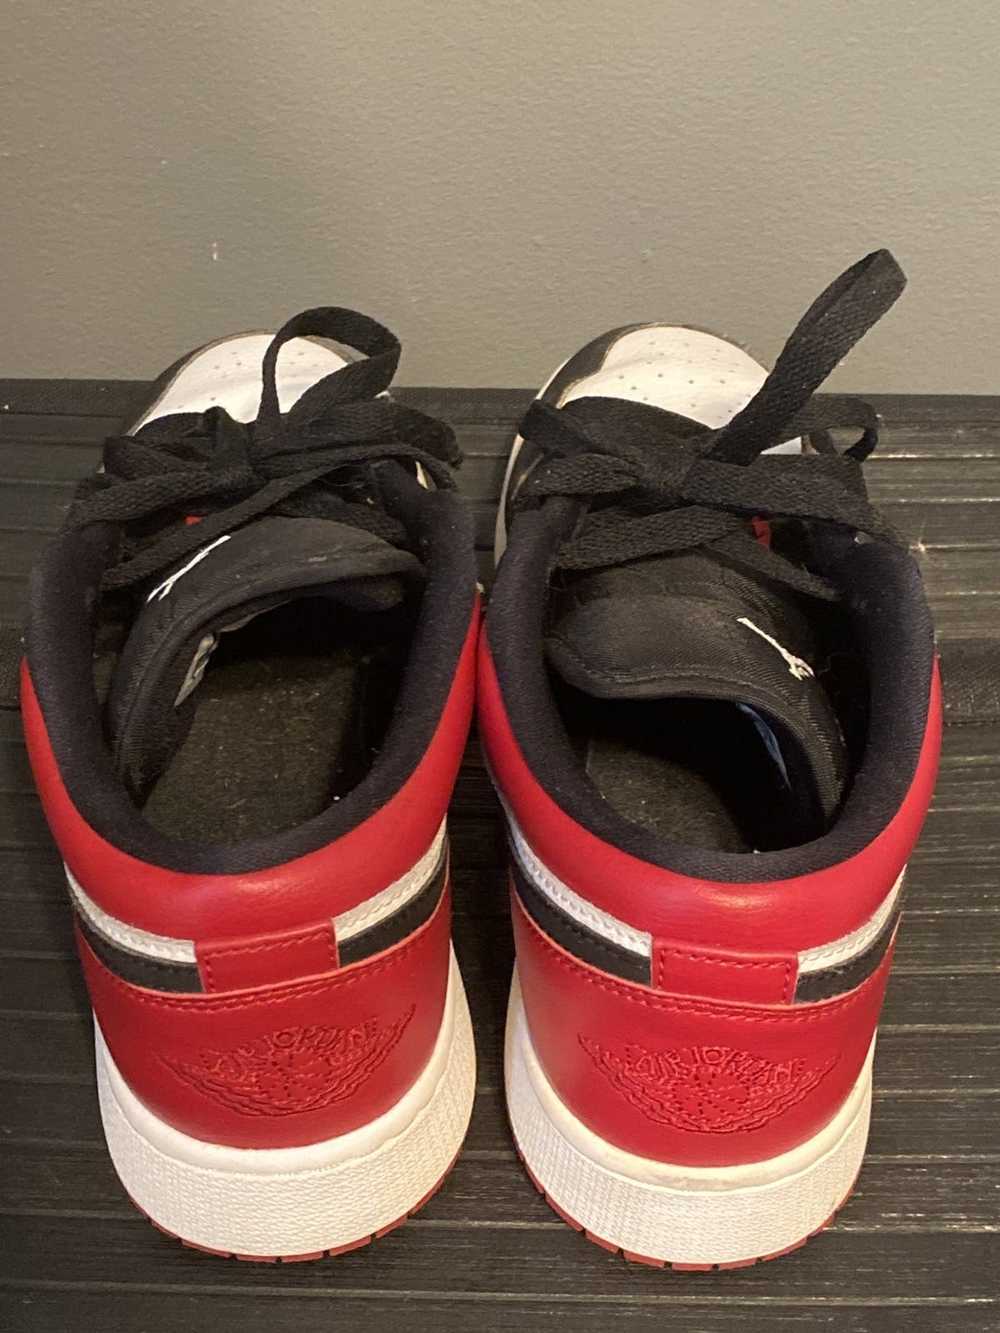 Jordan Brand × Nike Air Jordan 1 Low Bred Toe - image 4